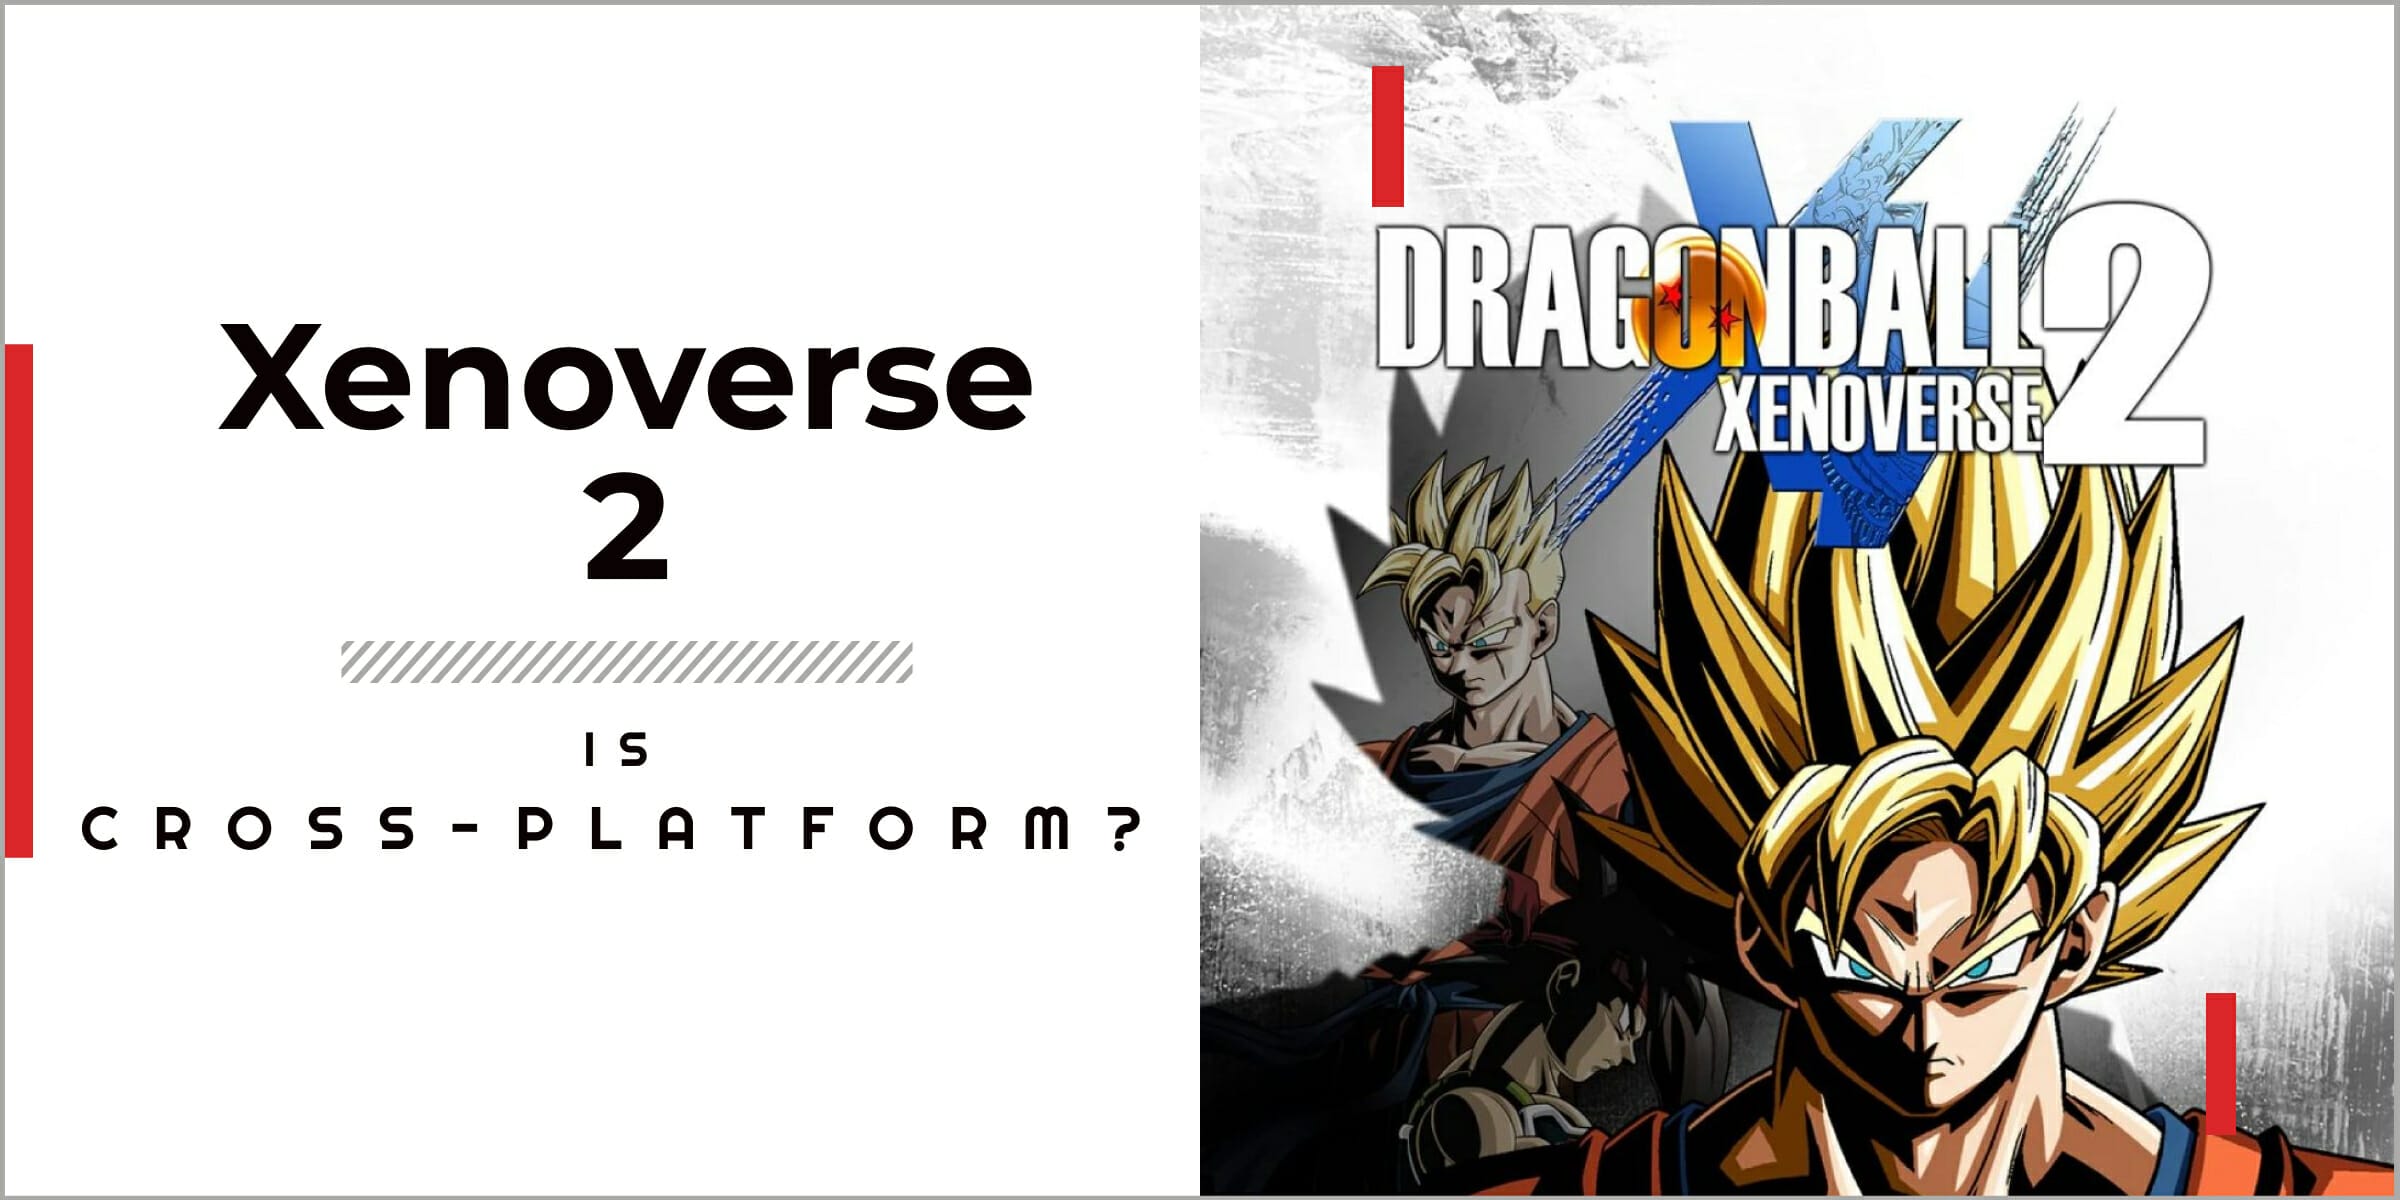 Is Dragon Ball Xenoverse Cross platform? Dragon Ball Xenoverse